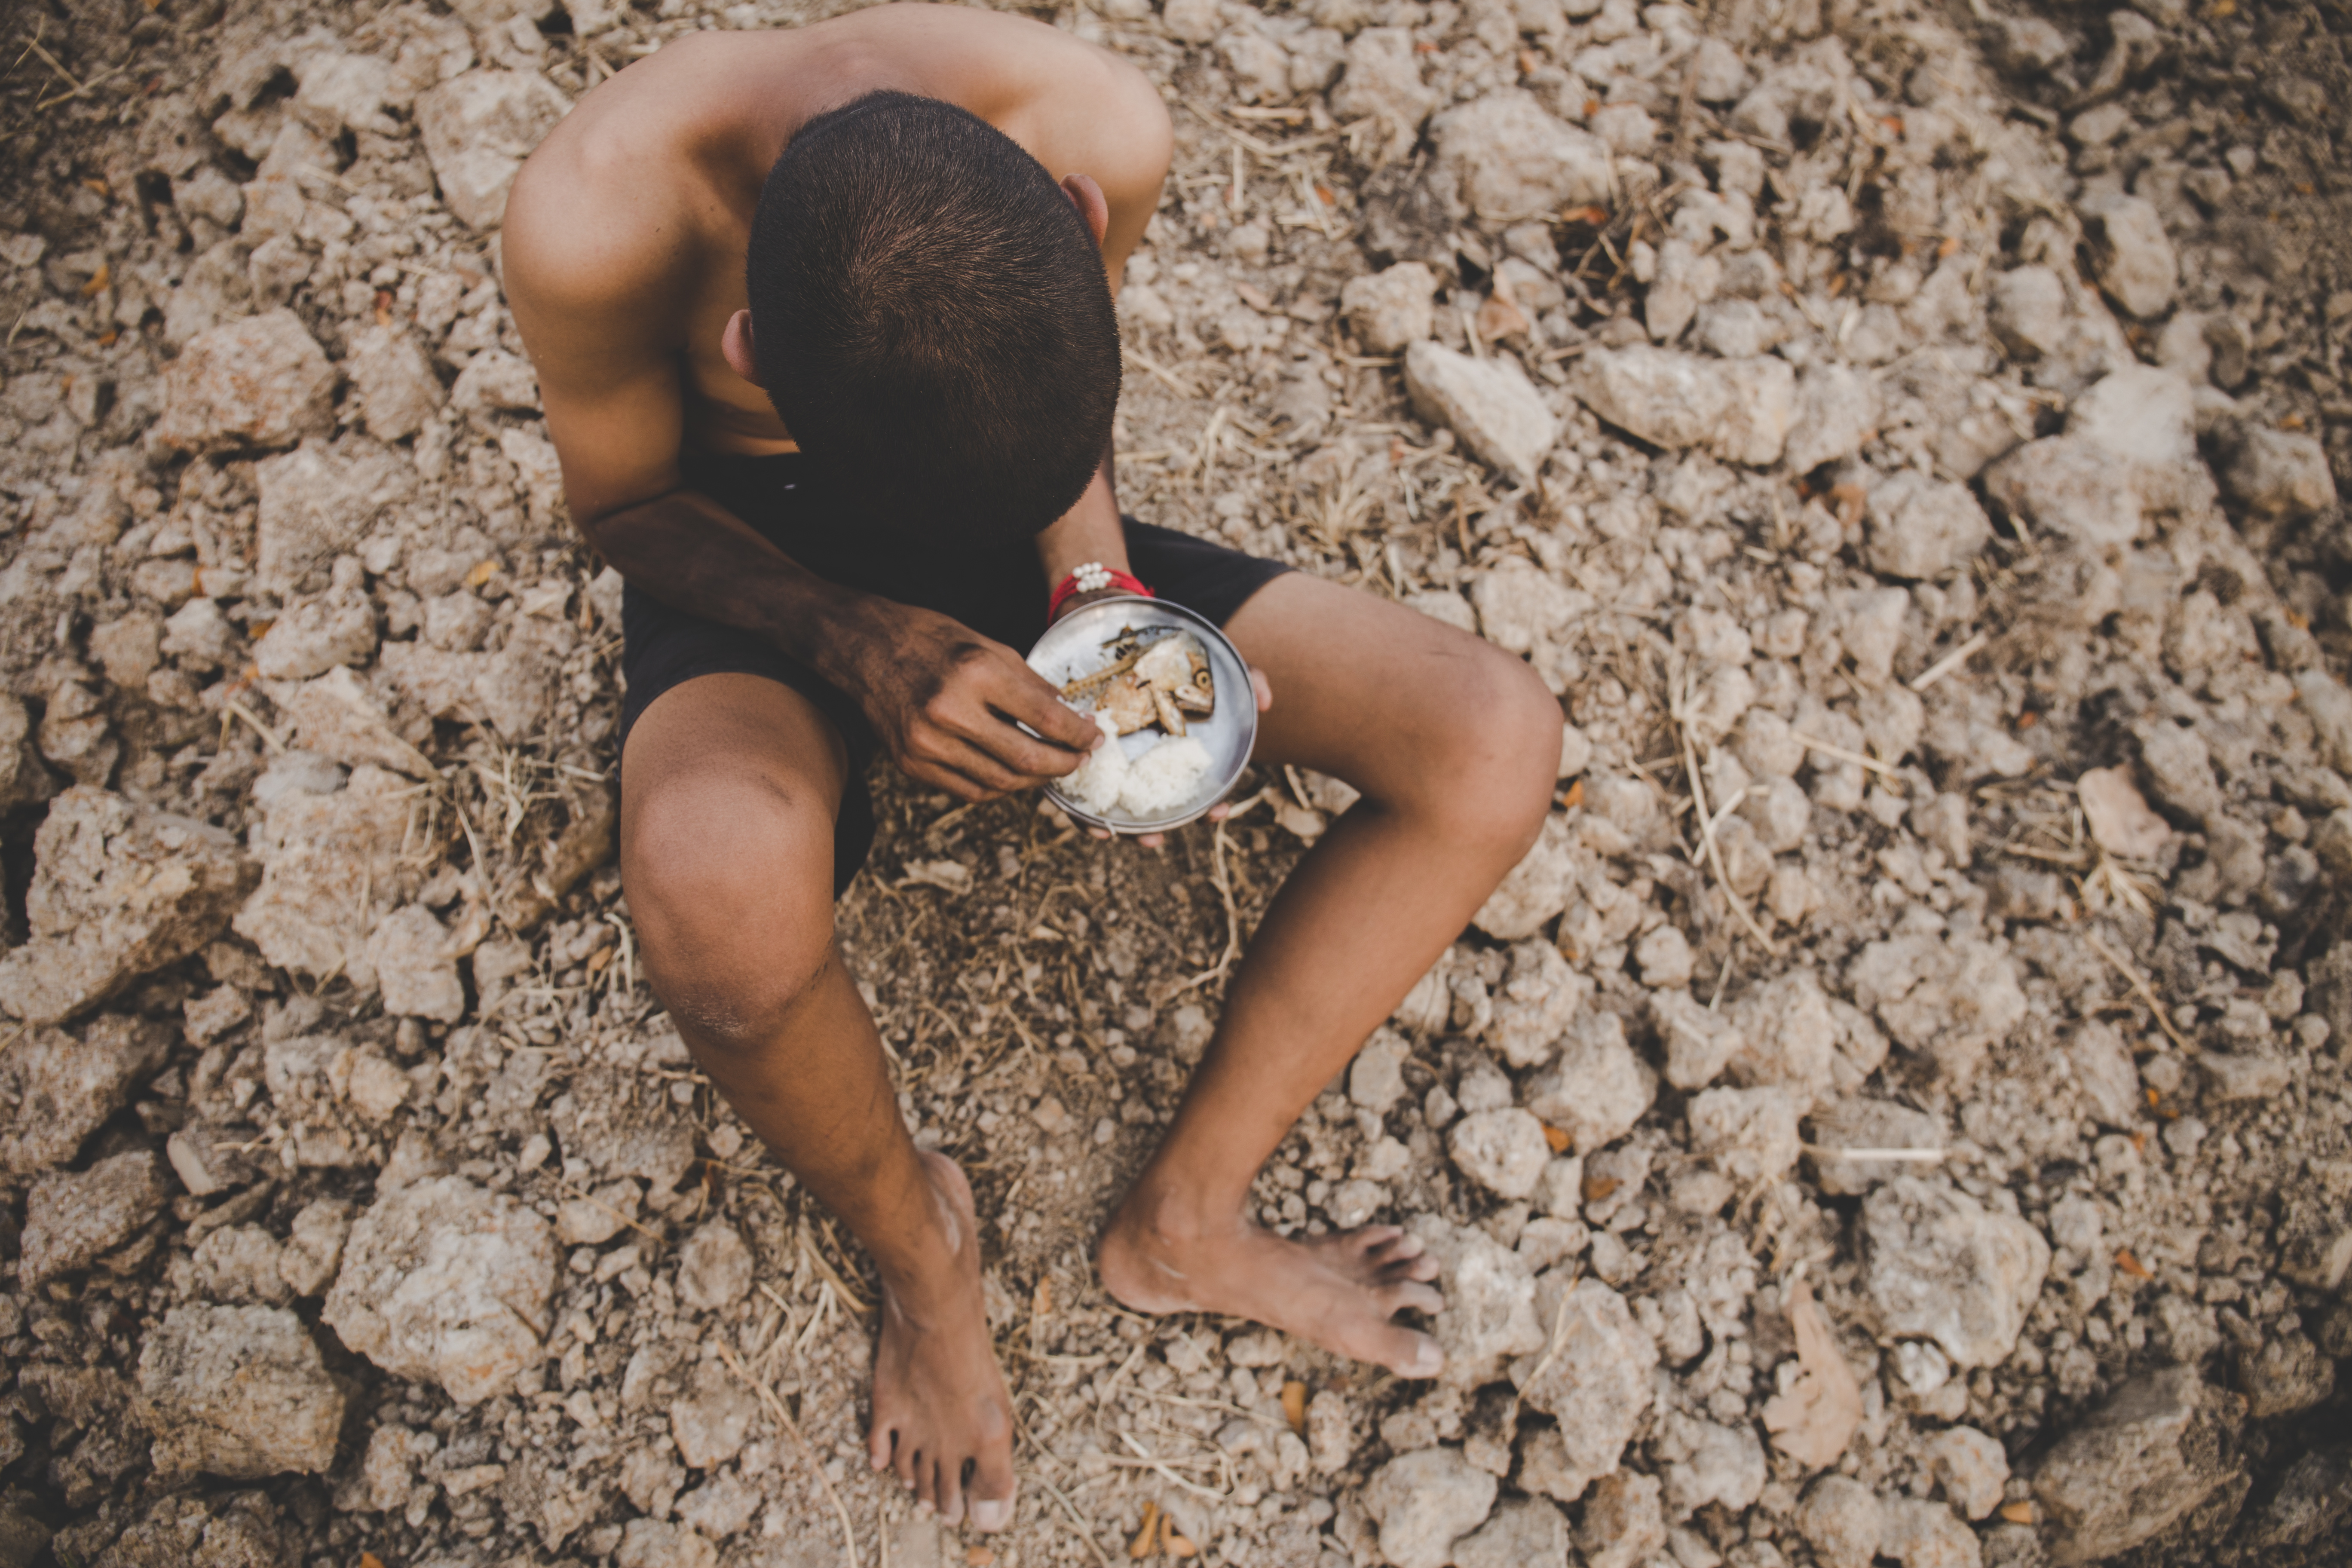 Dor ignorada: 10,3 milhões de pessoas passam fome no Brasil